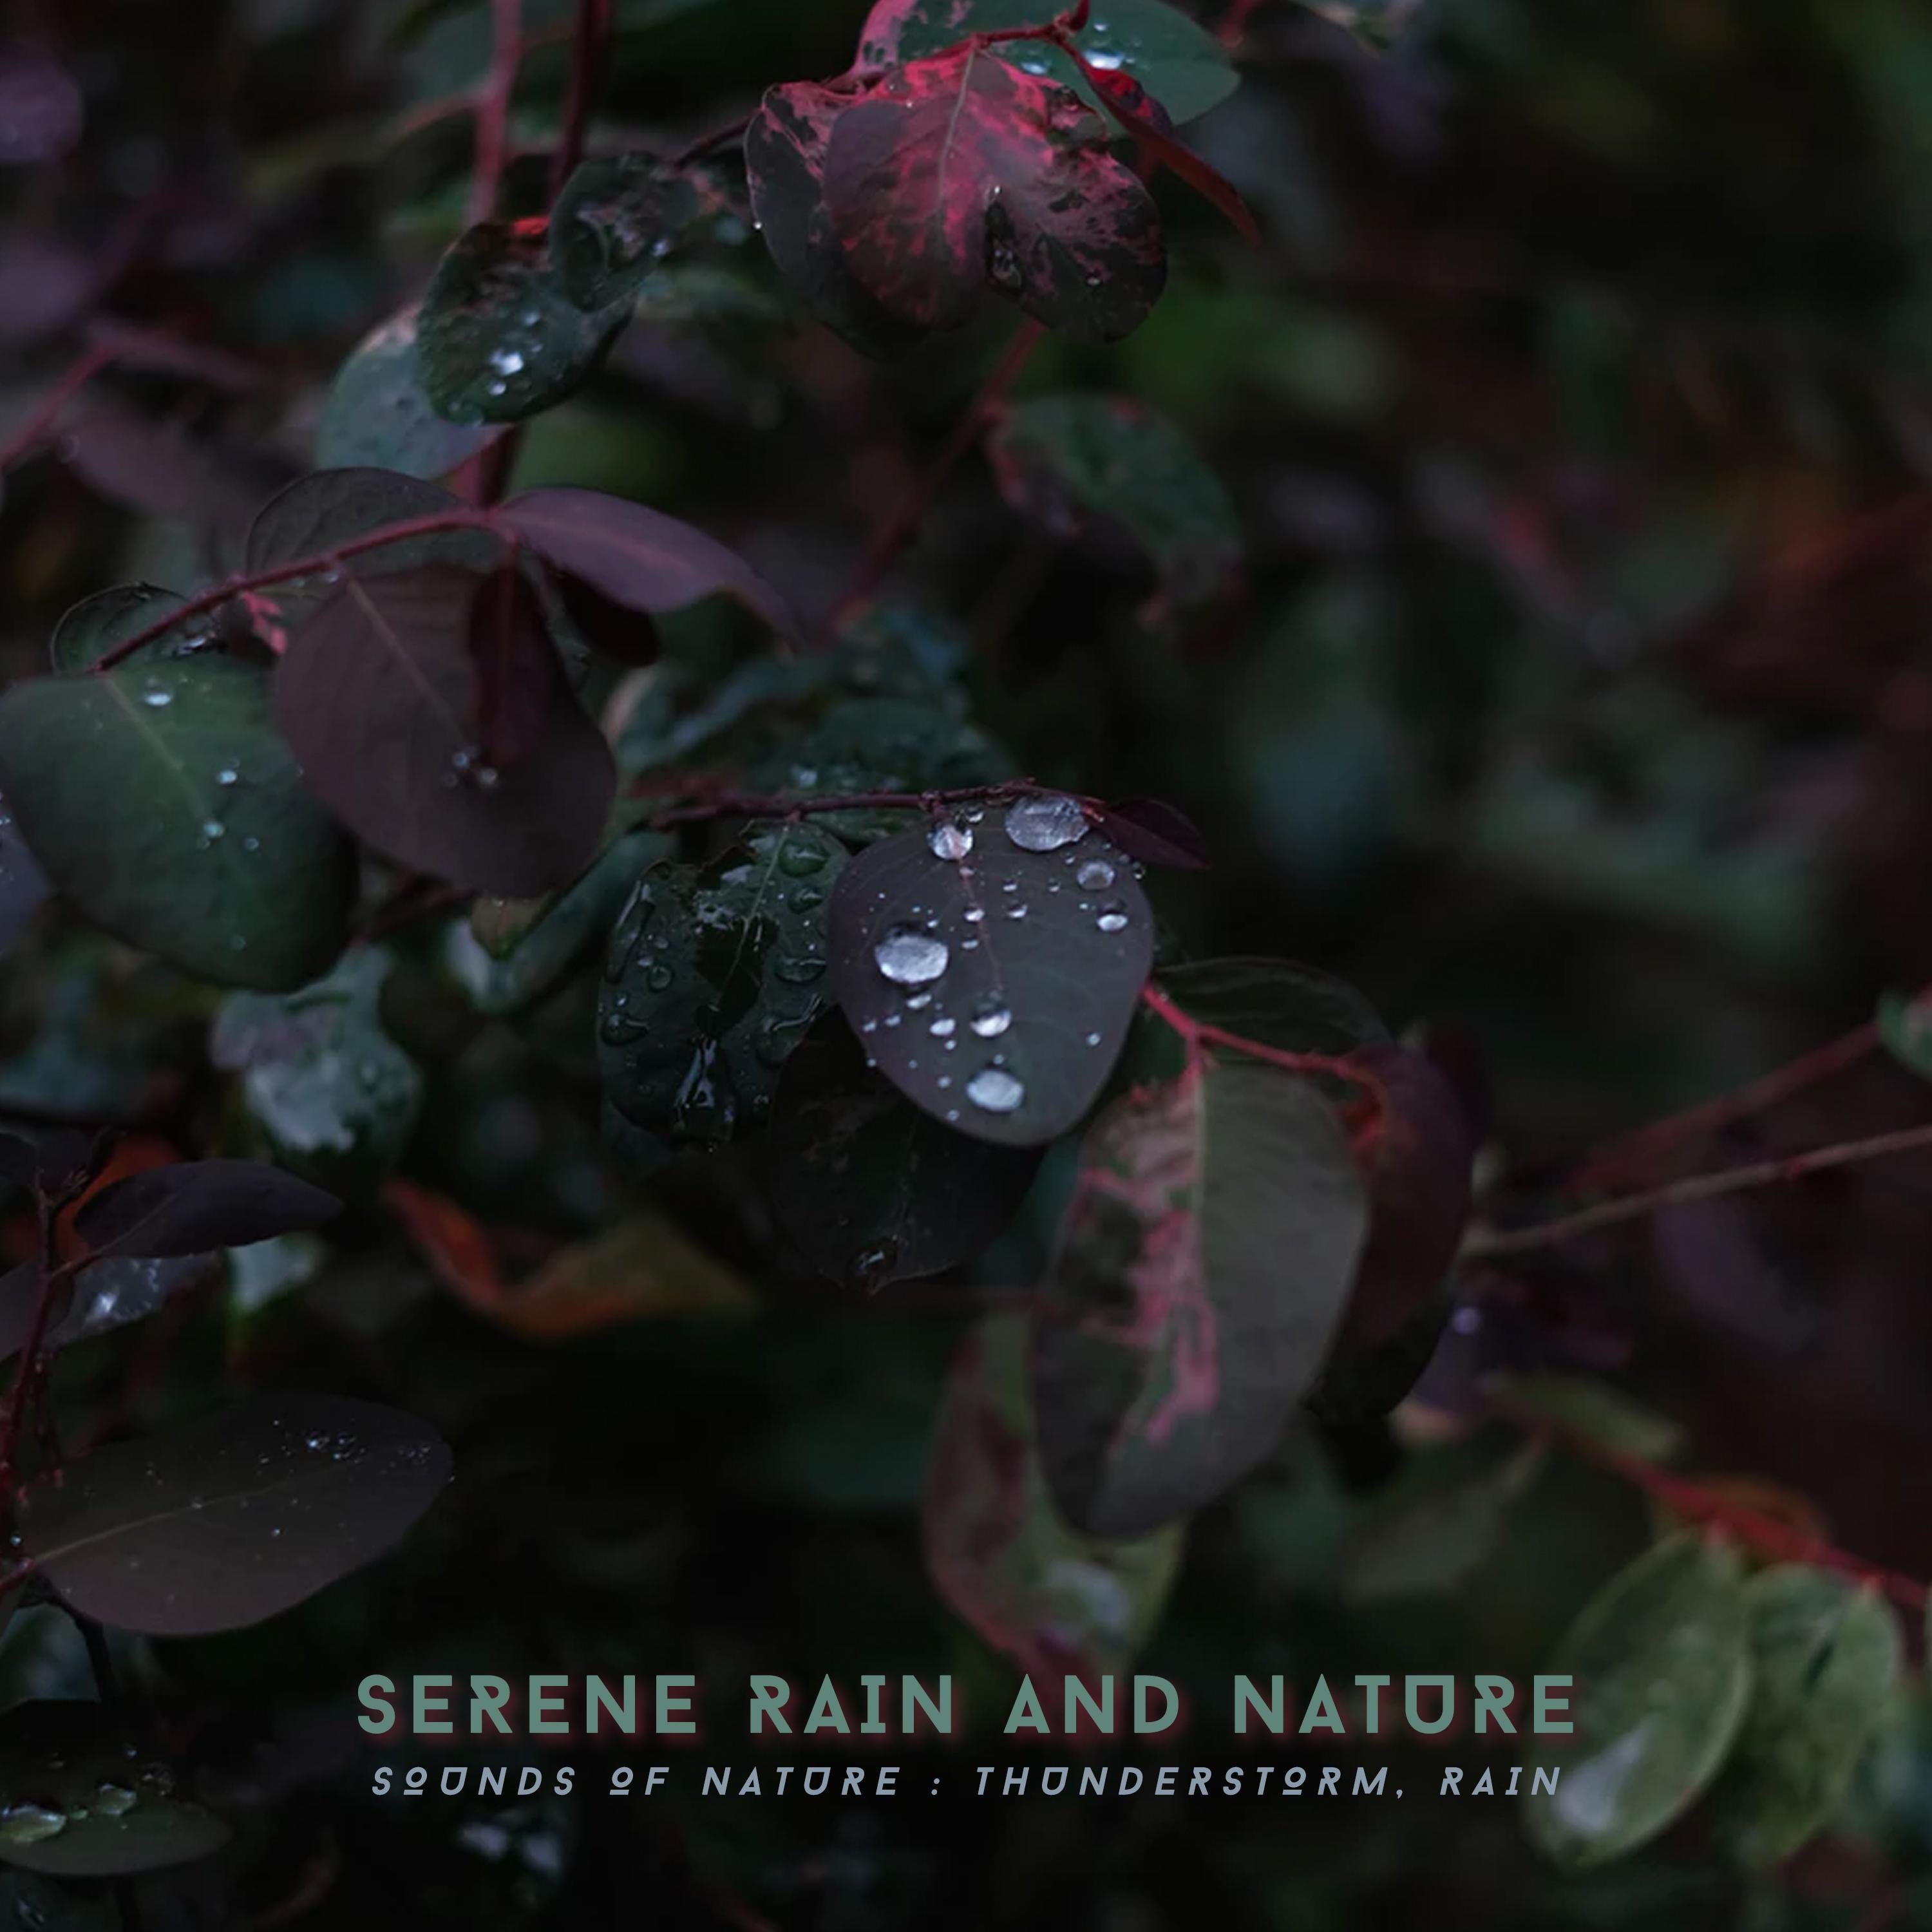 Serene Rain and Nature